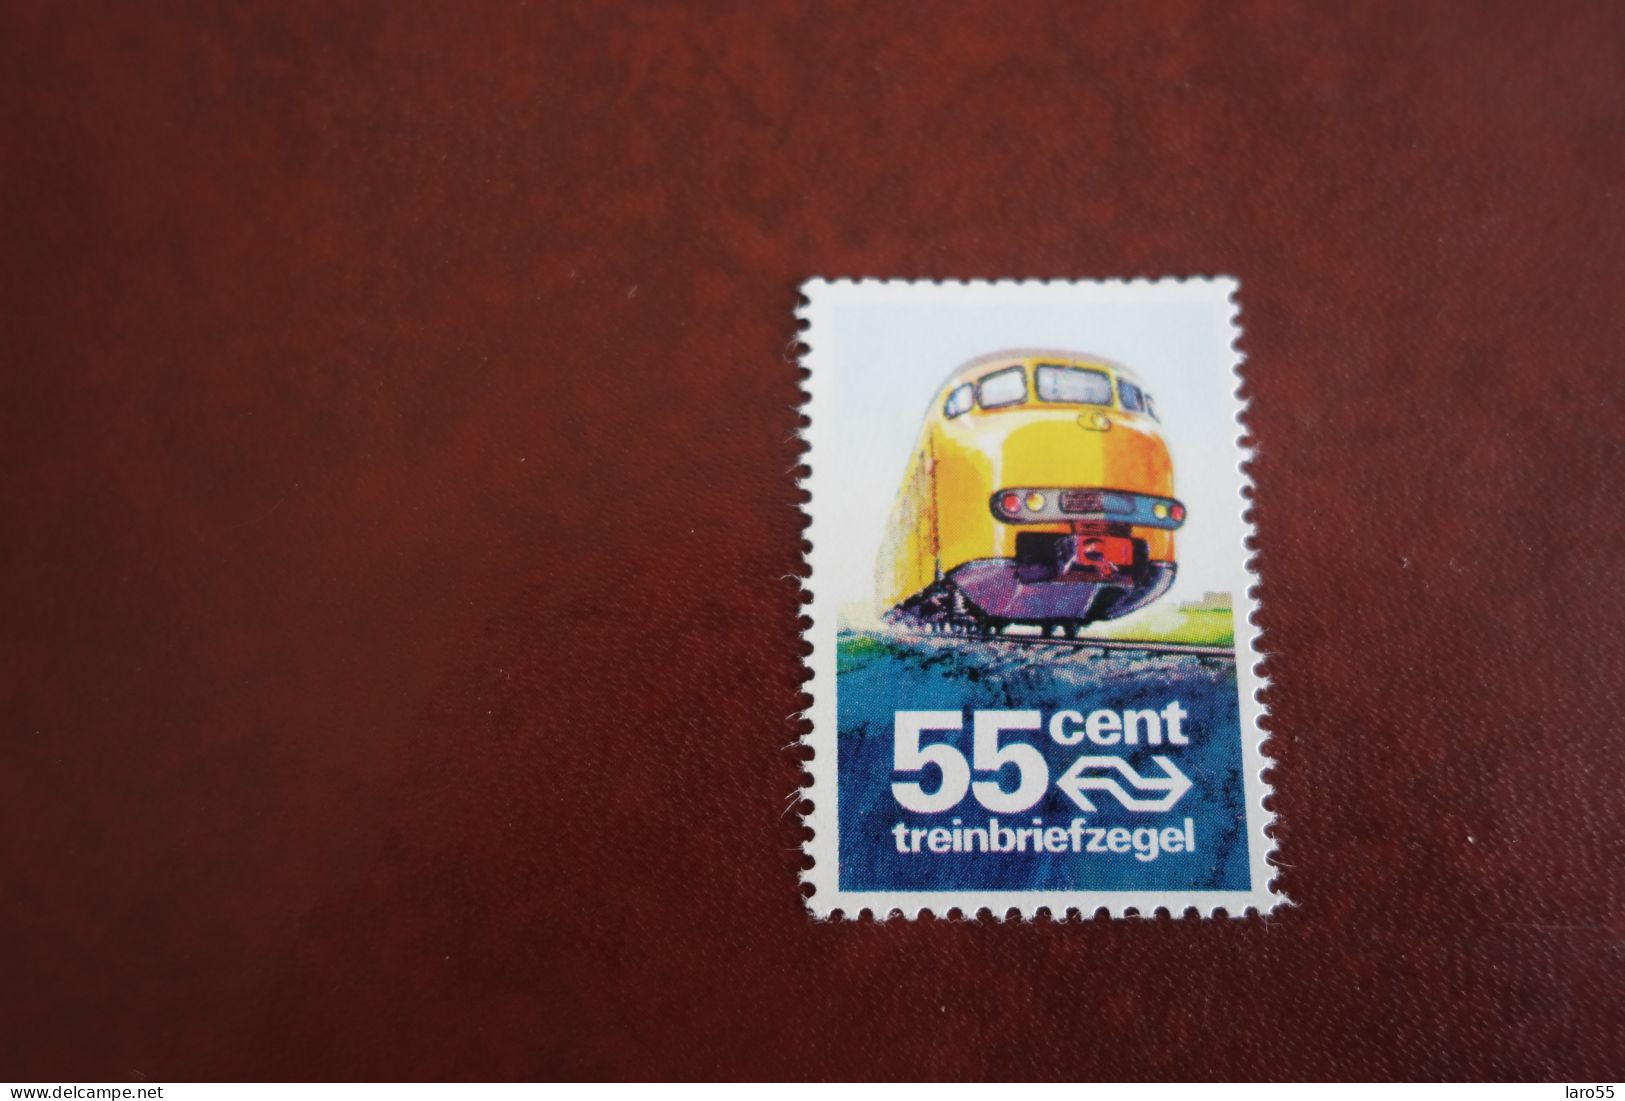 Treinbriefzegel 55 Cent - Railway